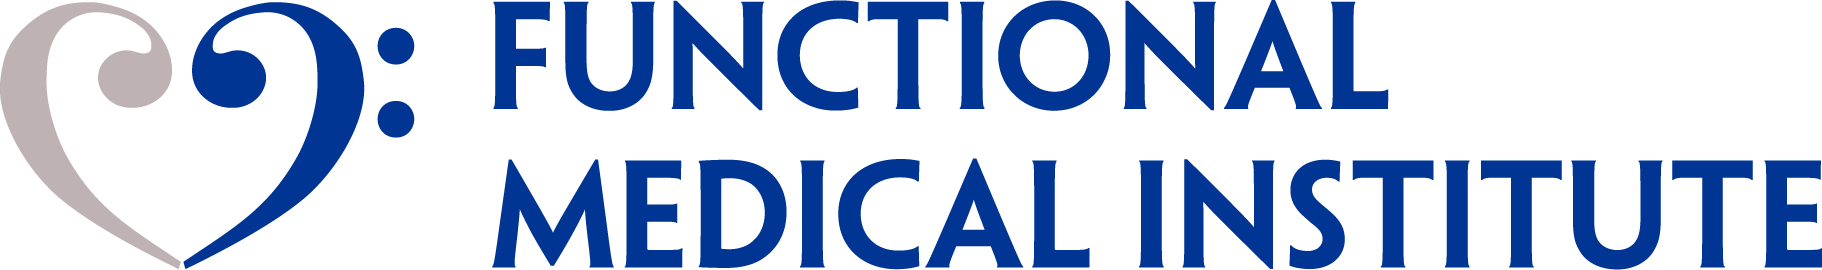 Functional Medical Institute - Affiliate Program